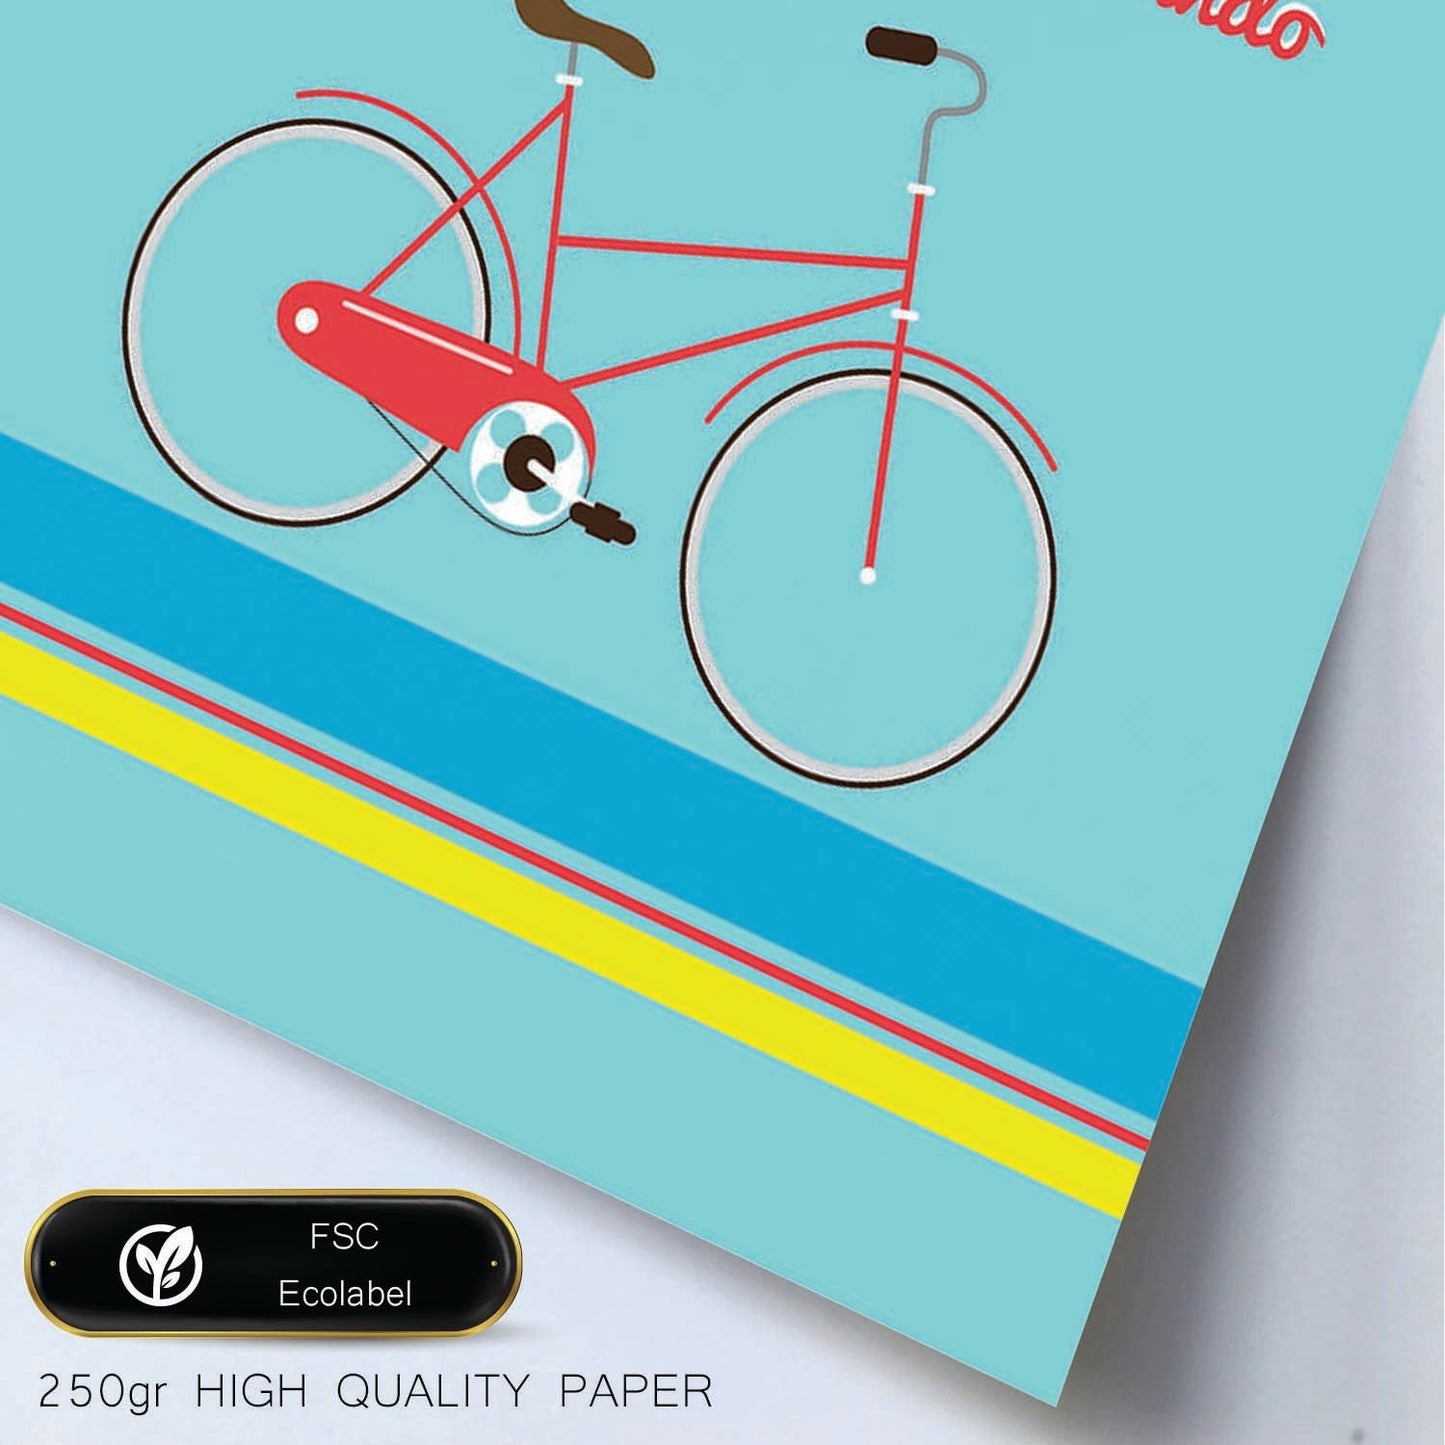 Poster con mensaje feliz. Lámina La vida es como ir en bicicleta....-Artwork-Nacnic-Nacnic Estudio SL